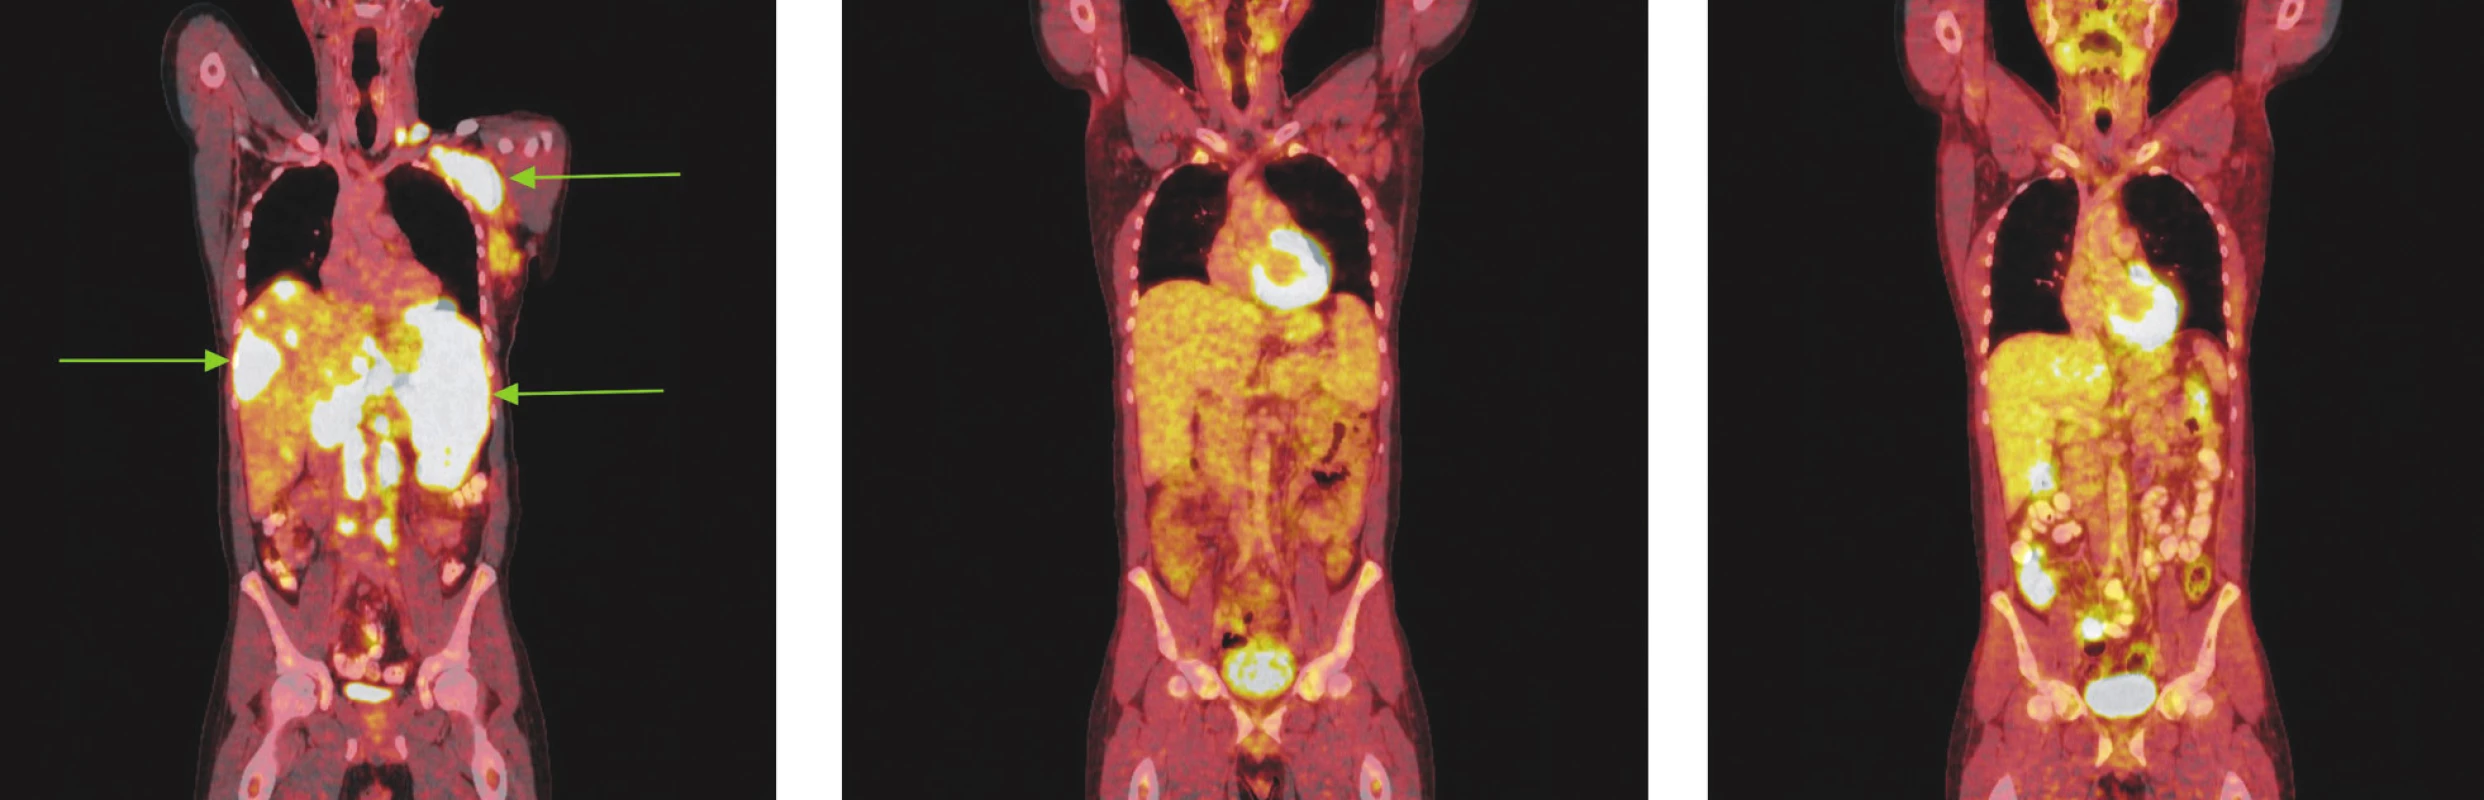 Série PET/CT snímků u nemocného s difuzním B-velkobuněčným lymfomem před léčbou, po 2 cyklech léčby a po ukončení léčby. Na prvním snímku nalezeny pakety lymfatických uzlin v levém nadklíčku a v levé axile vykazující výrazný hypermetabolismus glukózy. Další mnohočetná ložiska hypermetabolismu glukózy byla lokalizována ve skeletu páteře, žeber, ve zvětšené slezině a v játrech. Na druhém snímku po 2 cyklech léčby přetrvávají zvětšené lymfatické uzliny v nadklíčku v axile vlevo, ve srovnání s předchozím vyšetřením však na PET snímcích nevykazují hypermetabolismus glukózy a na CT je patrné, že došlo k jejich zmenšení. Na posledním snímku po dokončení léčby nalezeny pouze zvětšené lymfatické uzliny v levé axile, v ostatních lokalizacích bez patologicky změněných lymfatických uzlin. Hypermetabolismus glukózy svědčící pro viabilní nádorovou tkáň neprokázán.